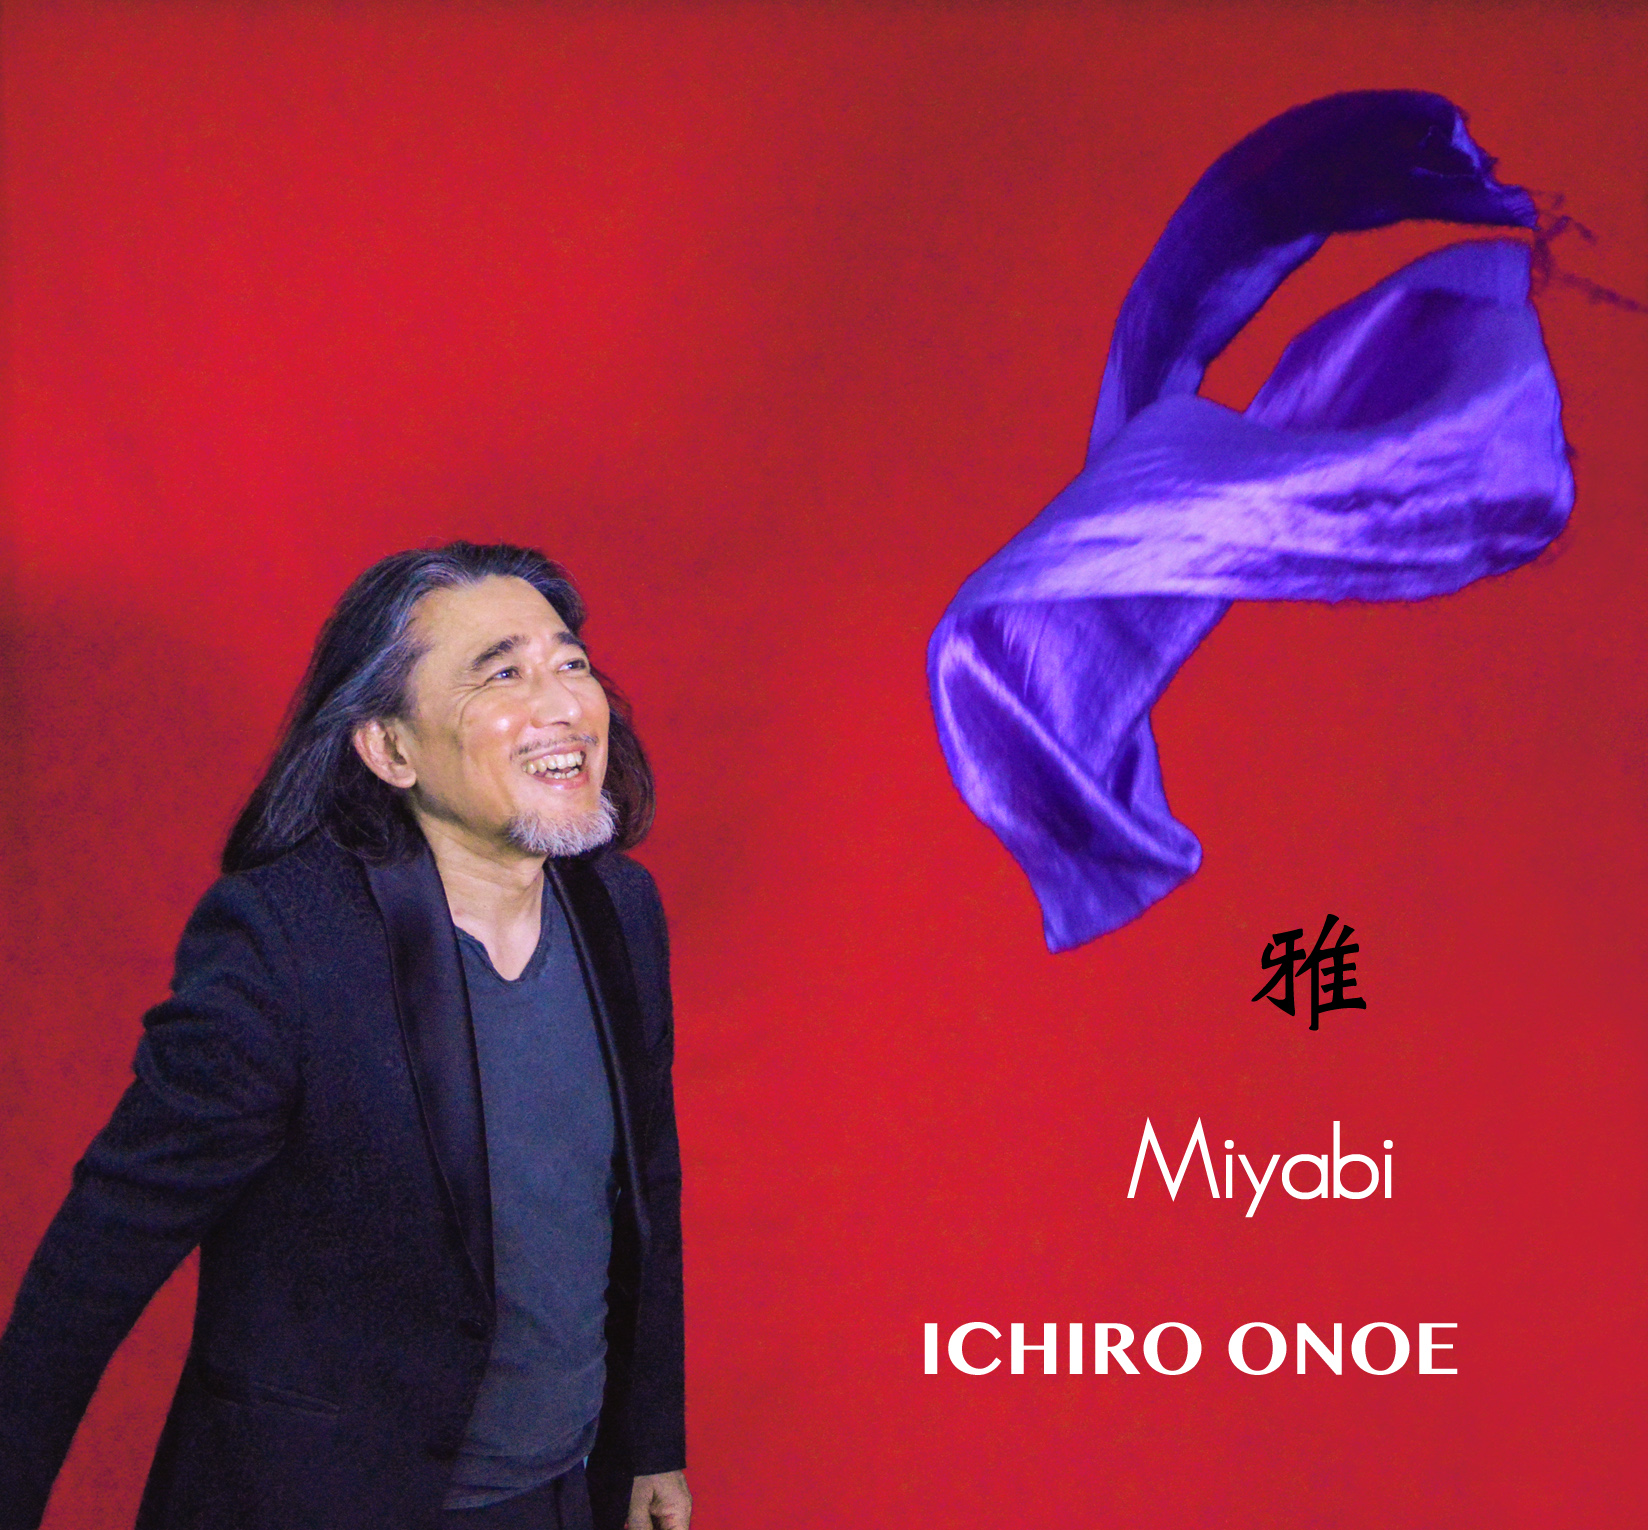 Ichiro Onoe/Miyabi